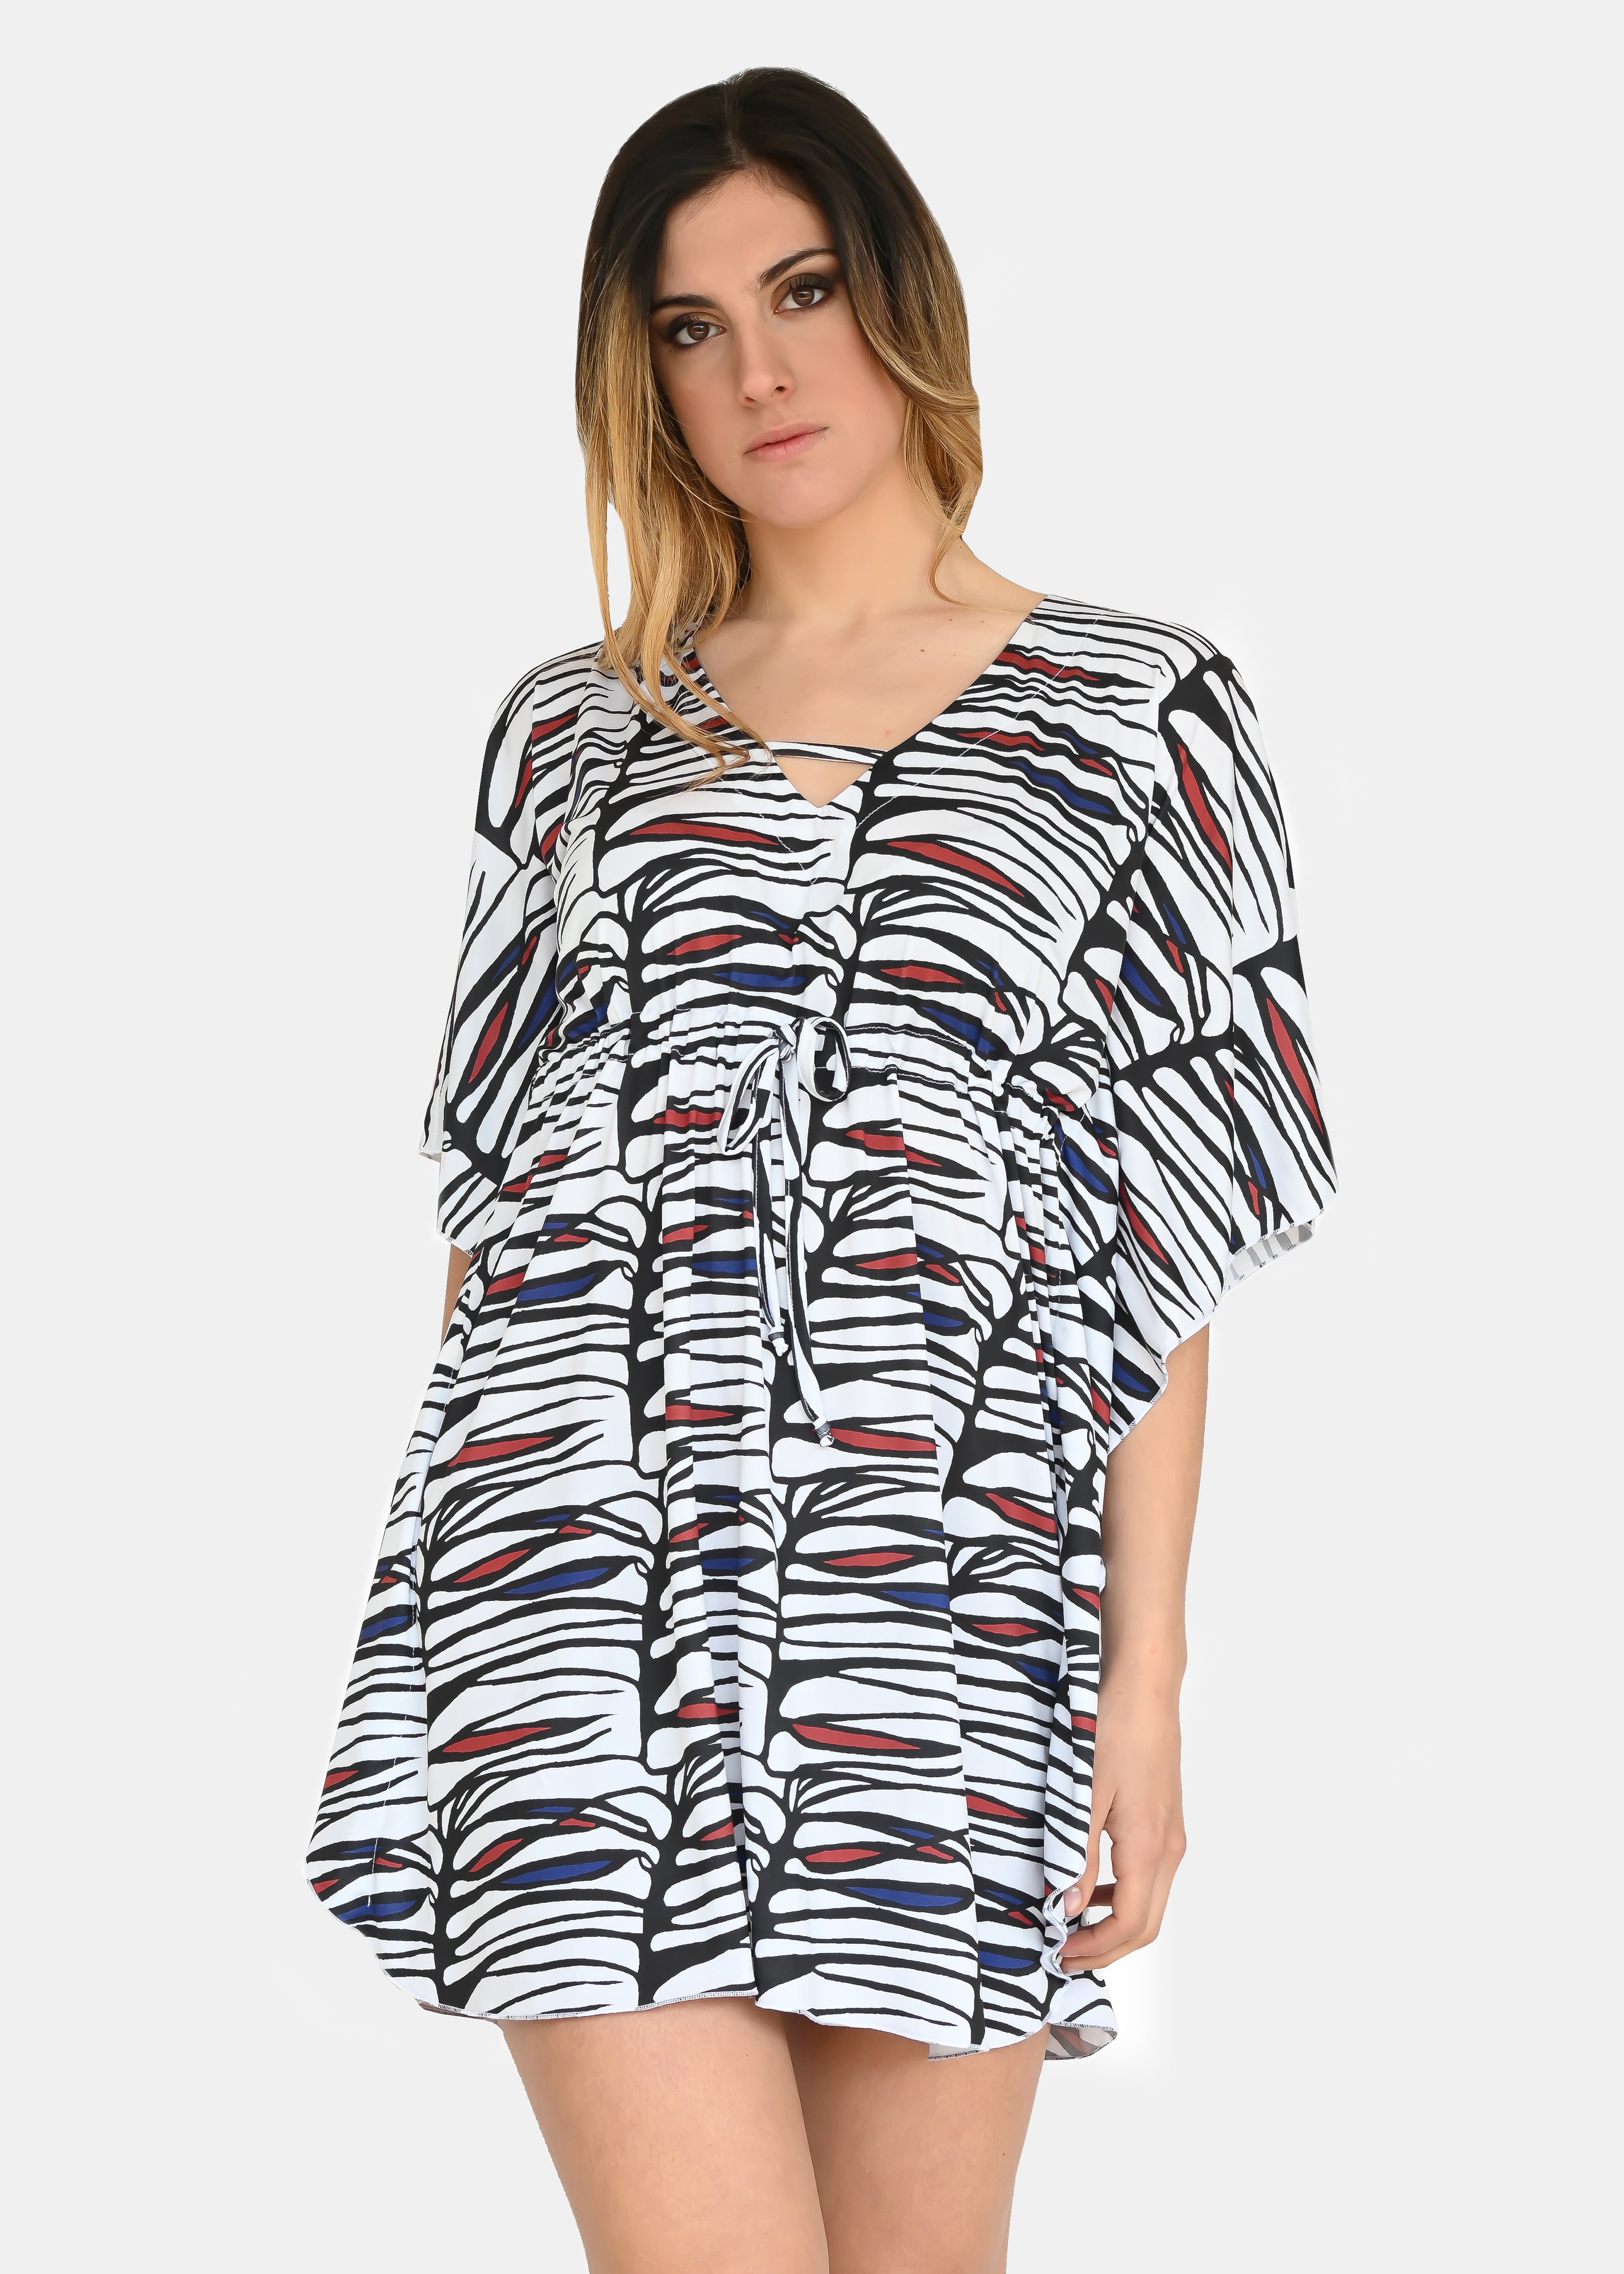 Mini abito estivo in maglina "Zebra Rossa", riporta uno dei tanti dipinti di Millyblu. Confortevole, fresco e morbido. Ha l'elastico in vita regolabile, scollo a V e cuciture laterali. Comodo per le lunghe giornate estive come copricostume o mini dress.